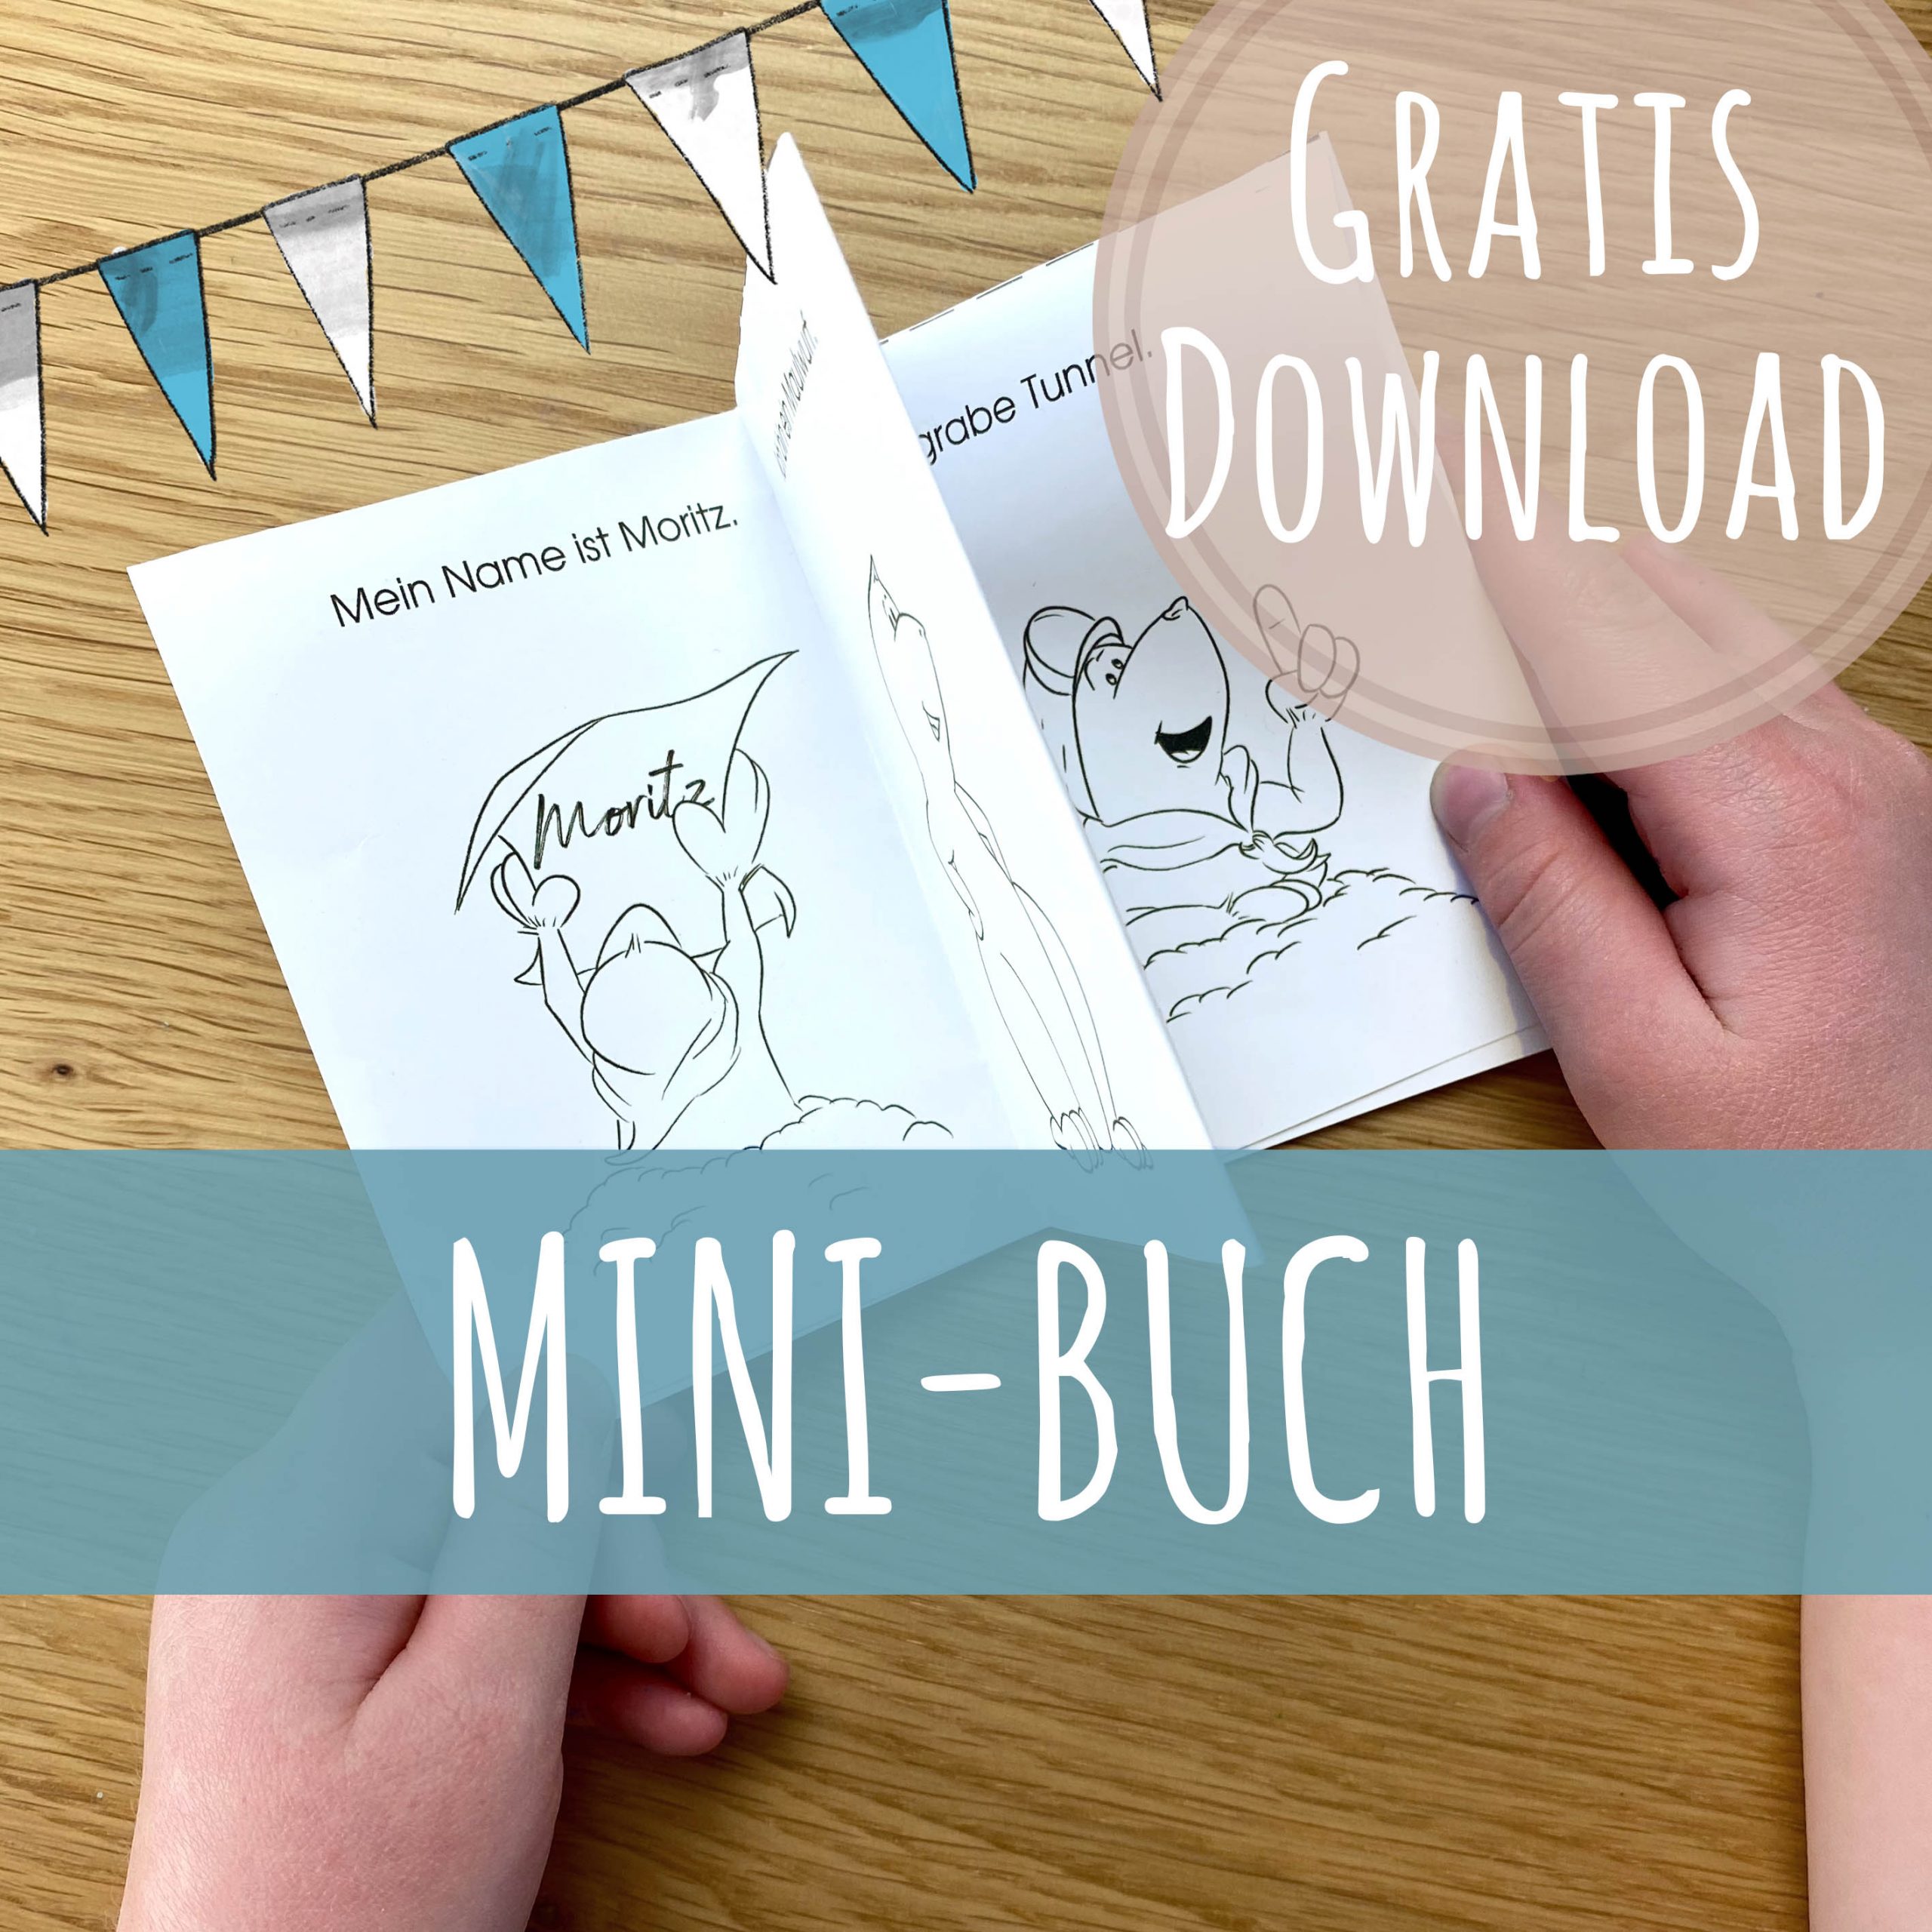 Downloads BochumBuch Minibuch 1 scaled